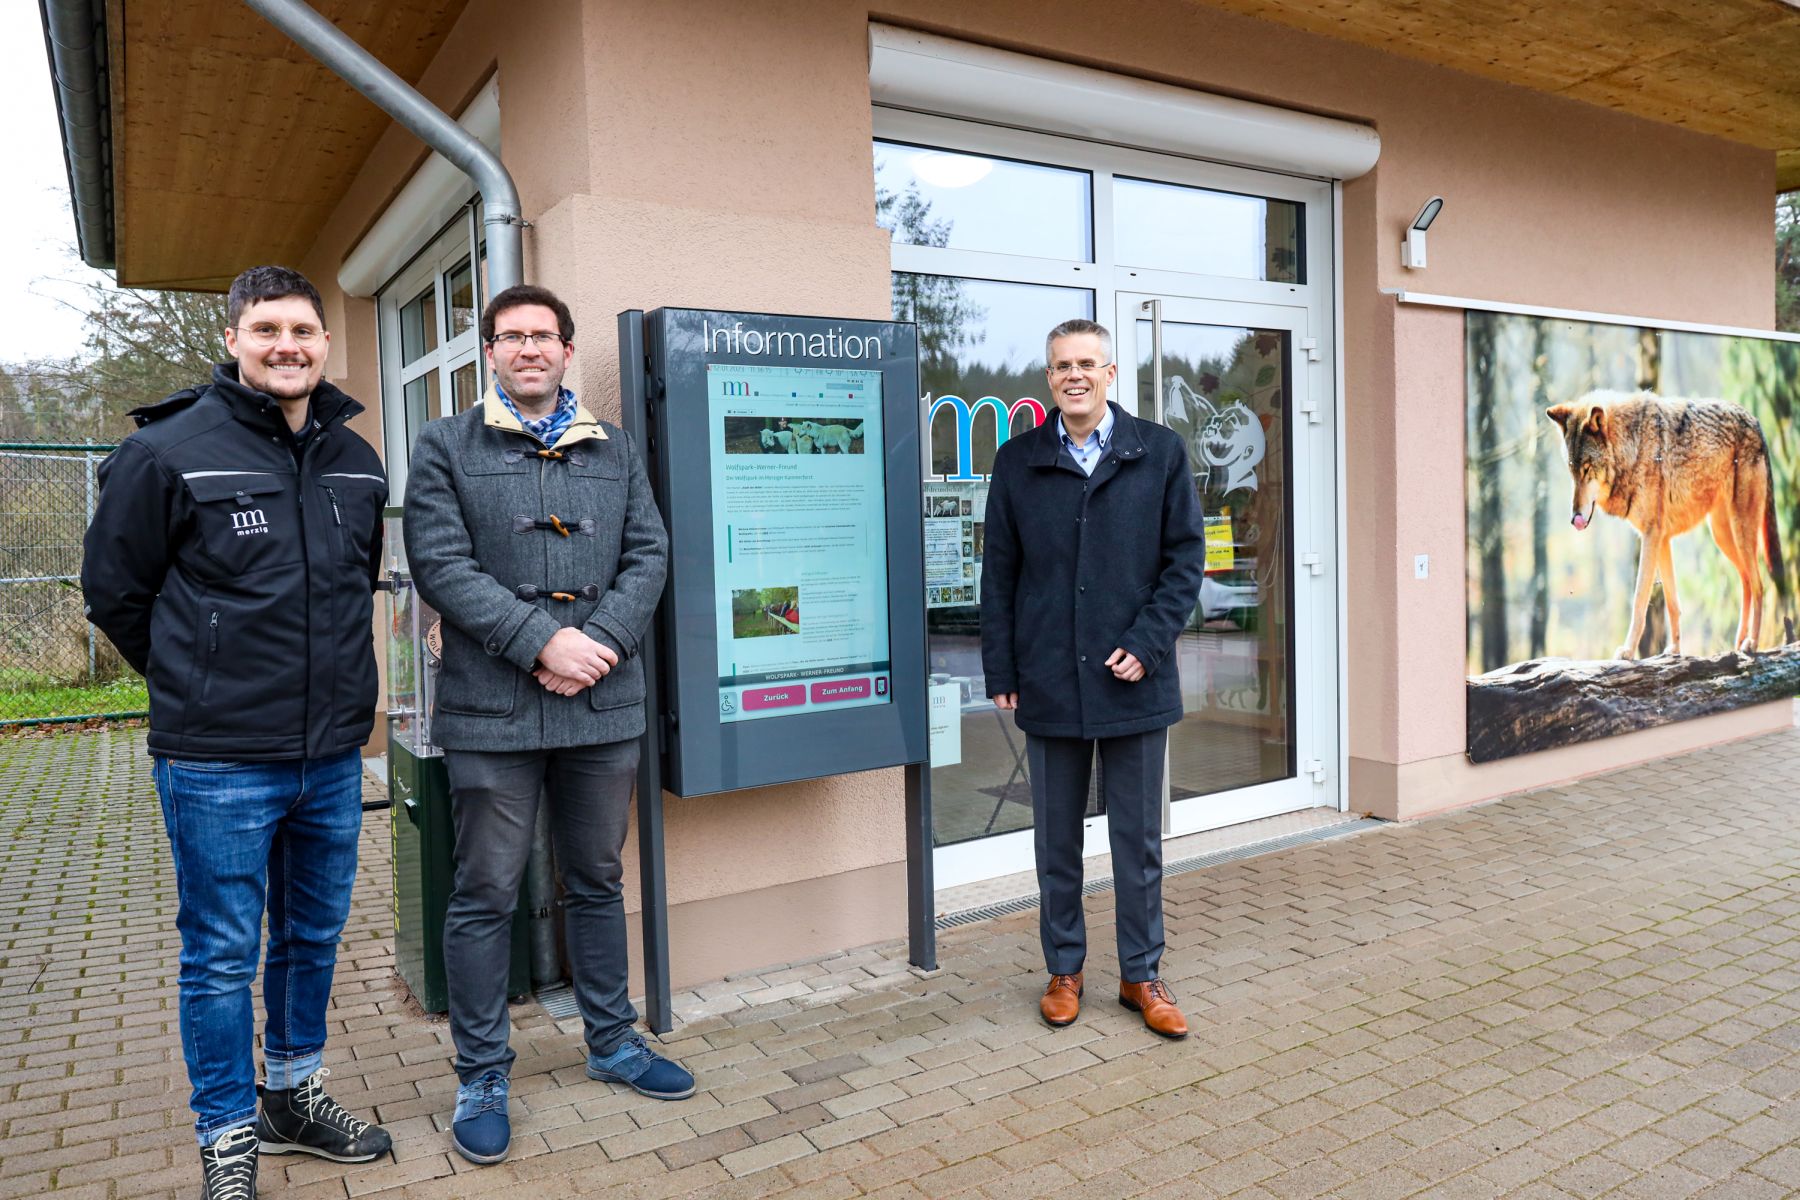 Das Foto zeigt das Info-Terminal. Links davon steht der Bürgermeister der Kreisstadt Merzig, Marcus Hoffeld. Rechts davon stehen zwei weitere Personen.